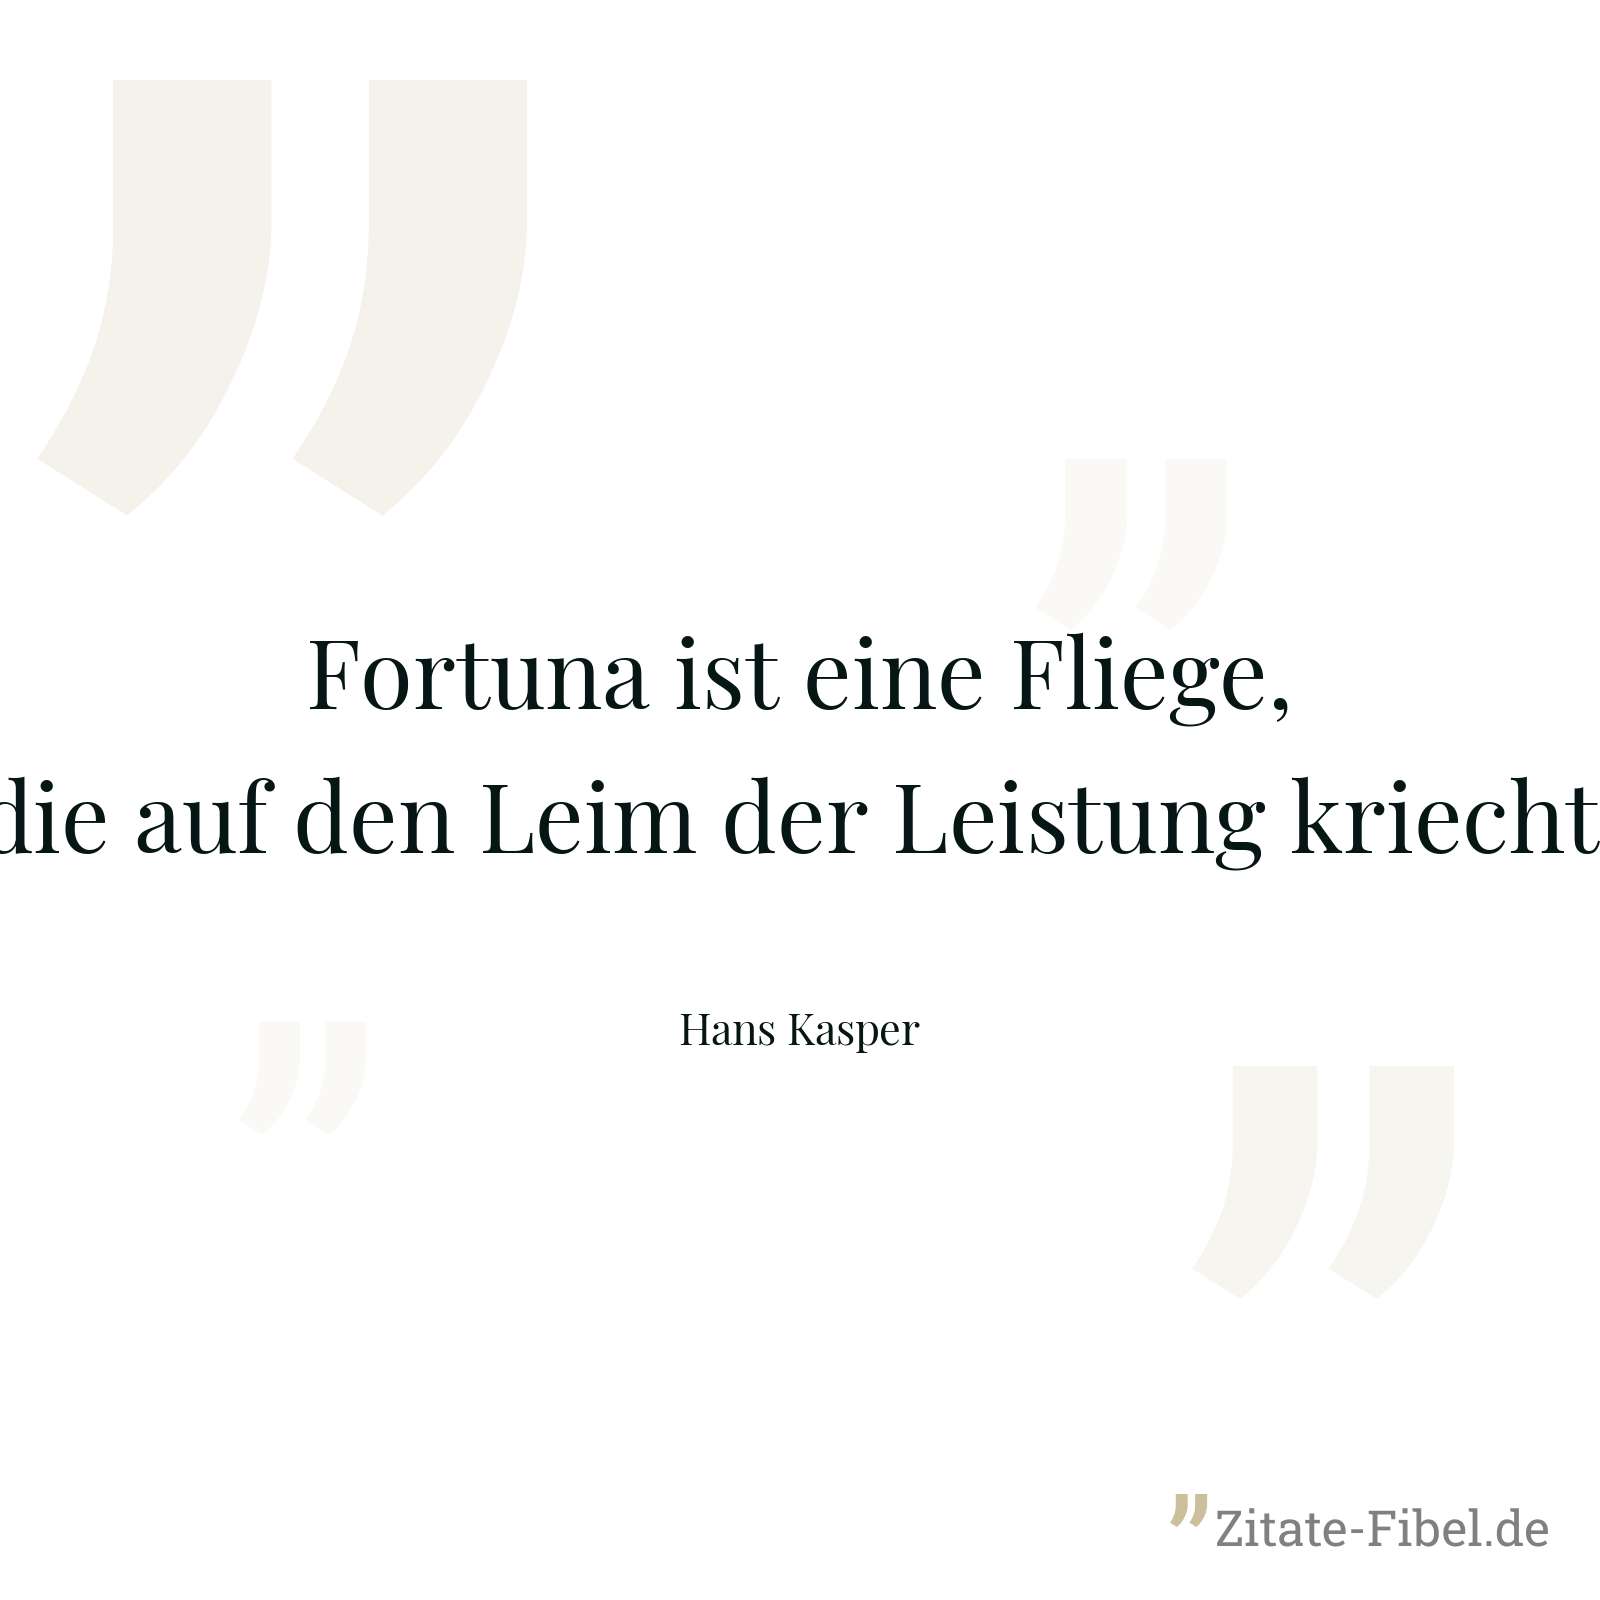 Fortuna ist eine Fliege, die auf den Leim der Leistung kriecht. - Hans Kasper